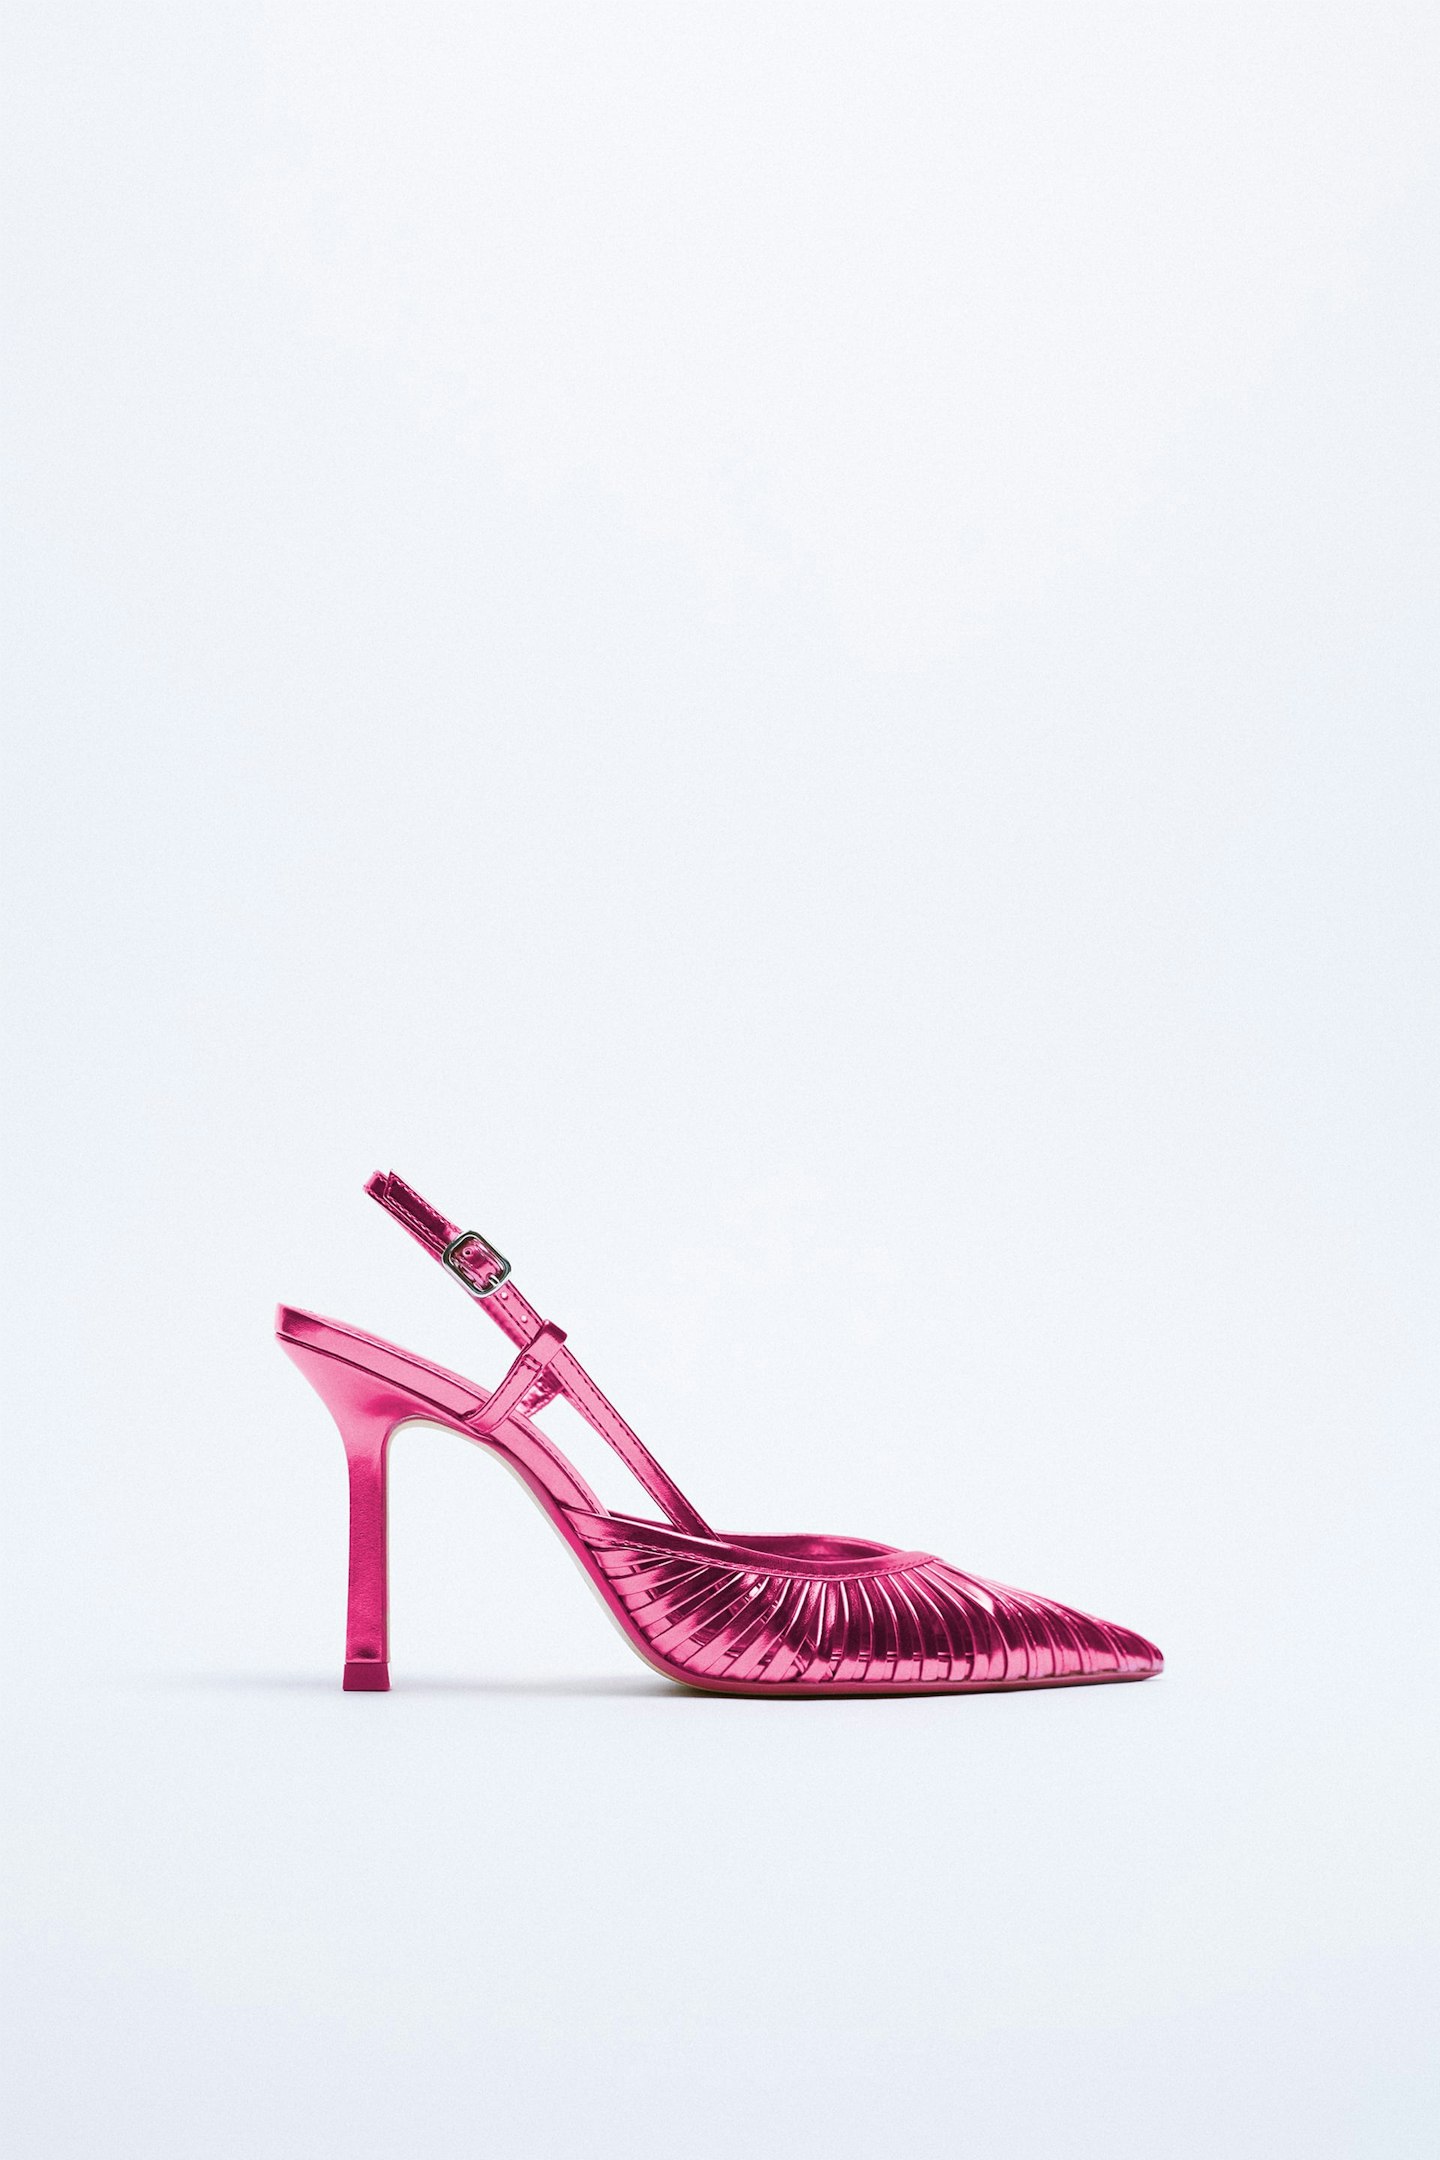 Zara Pink Metallic Heels